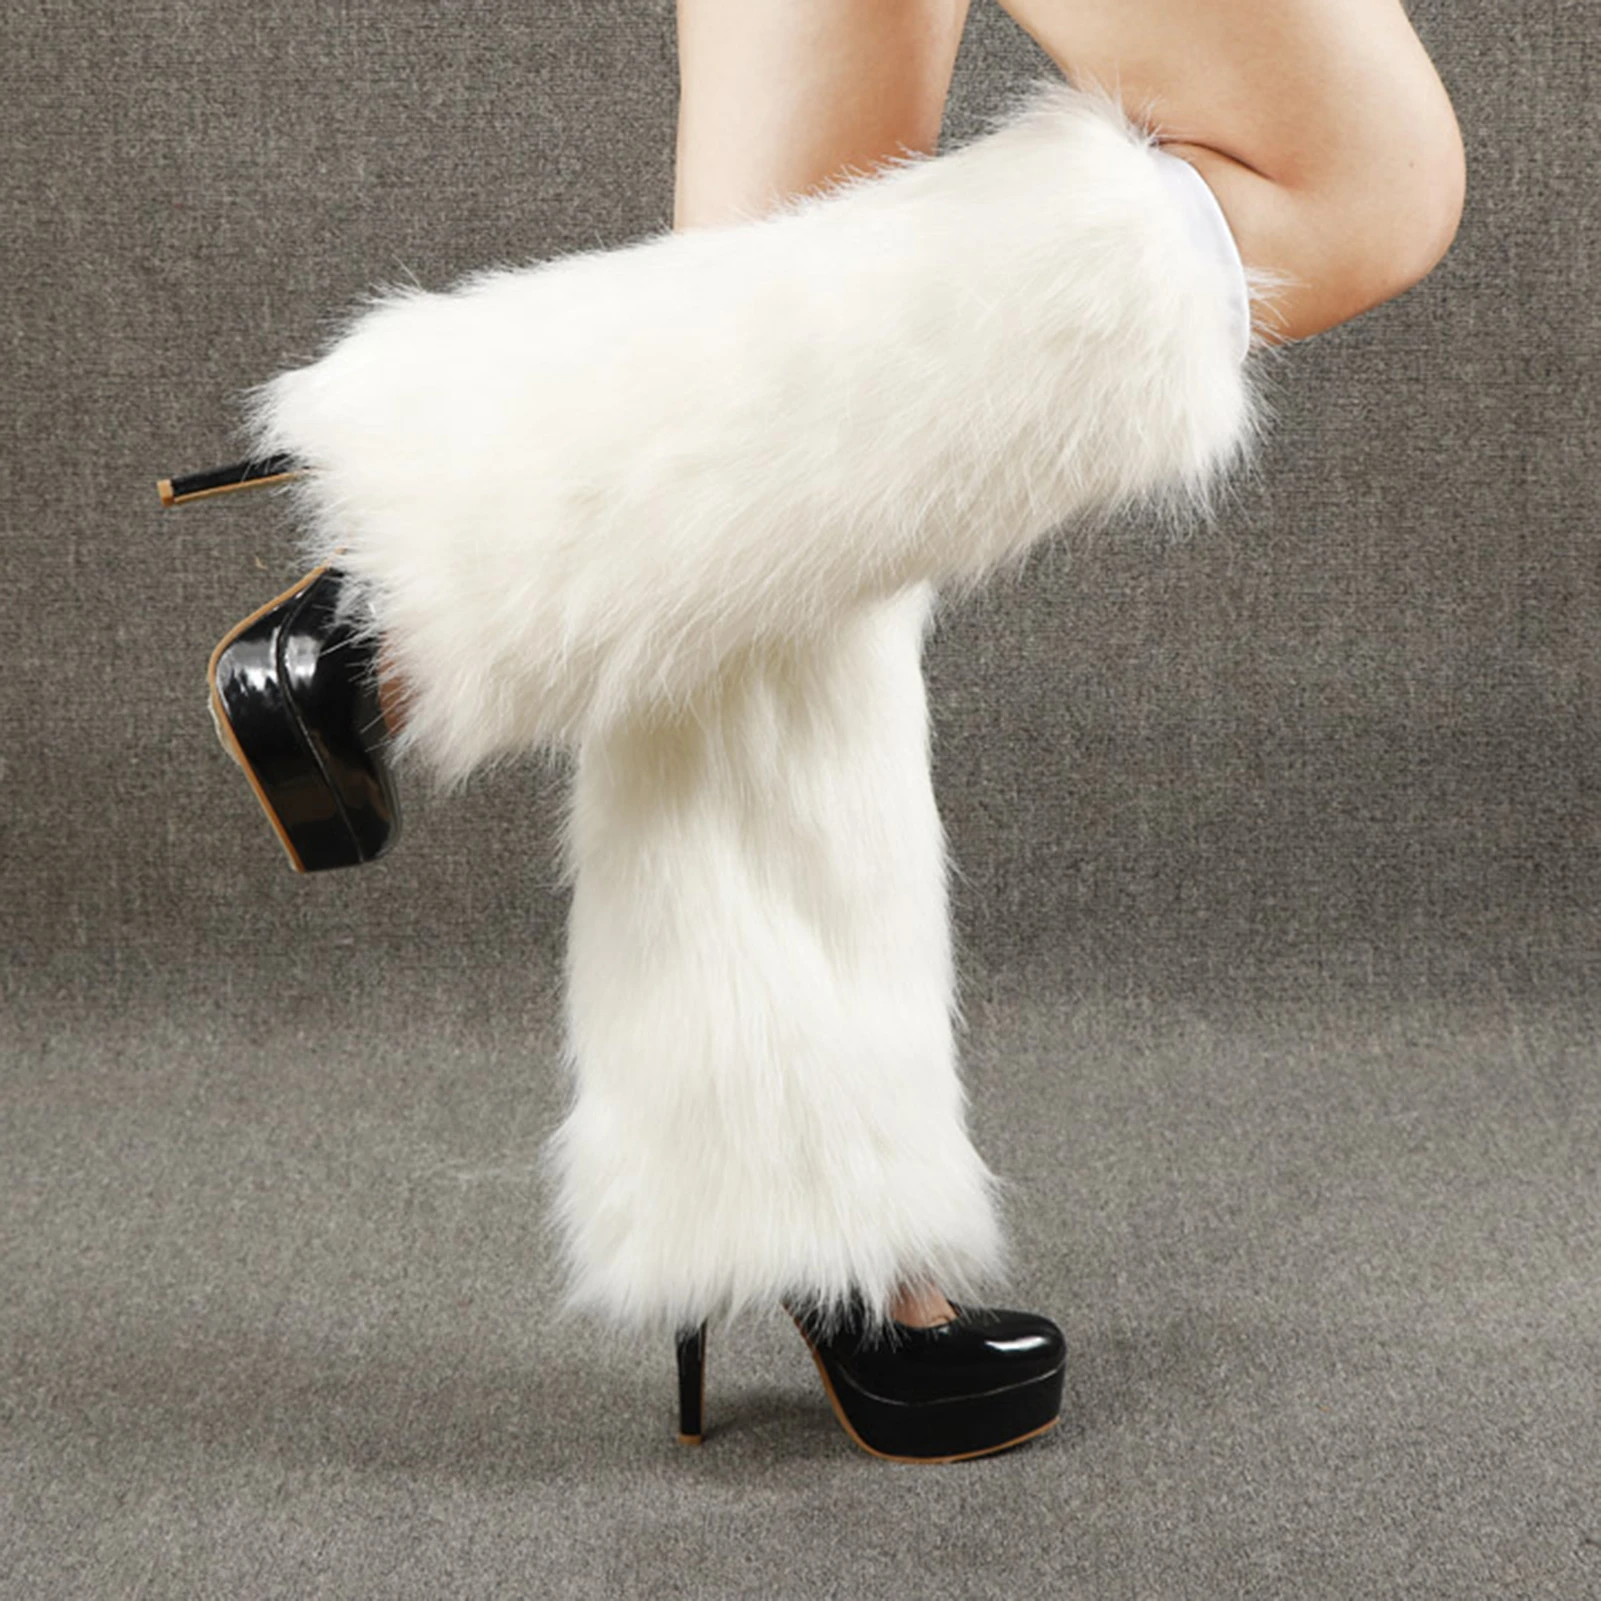 Winter Fashion Women's Girls Fluffy Fuzzy Faux Fur Leg Warmers Boot Covers Socks